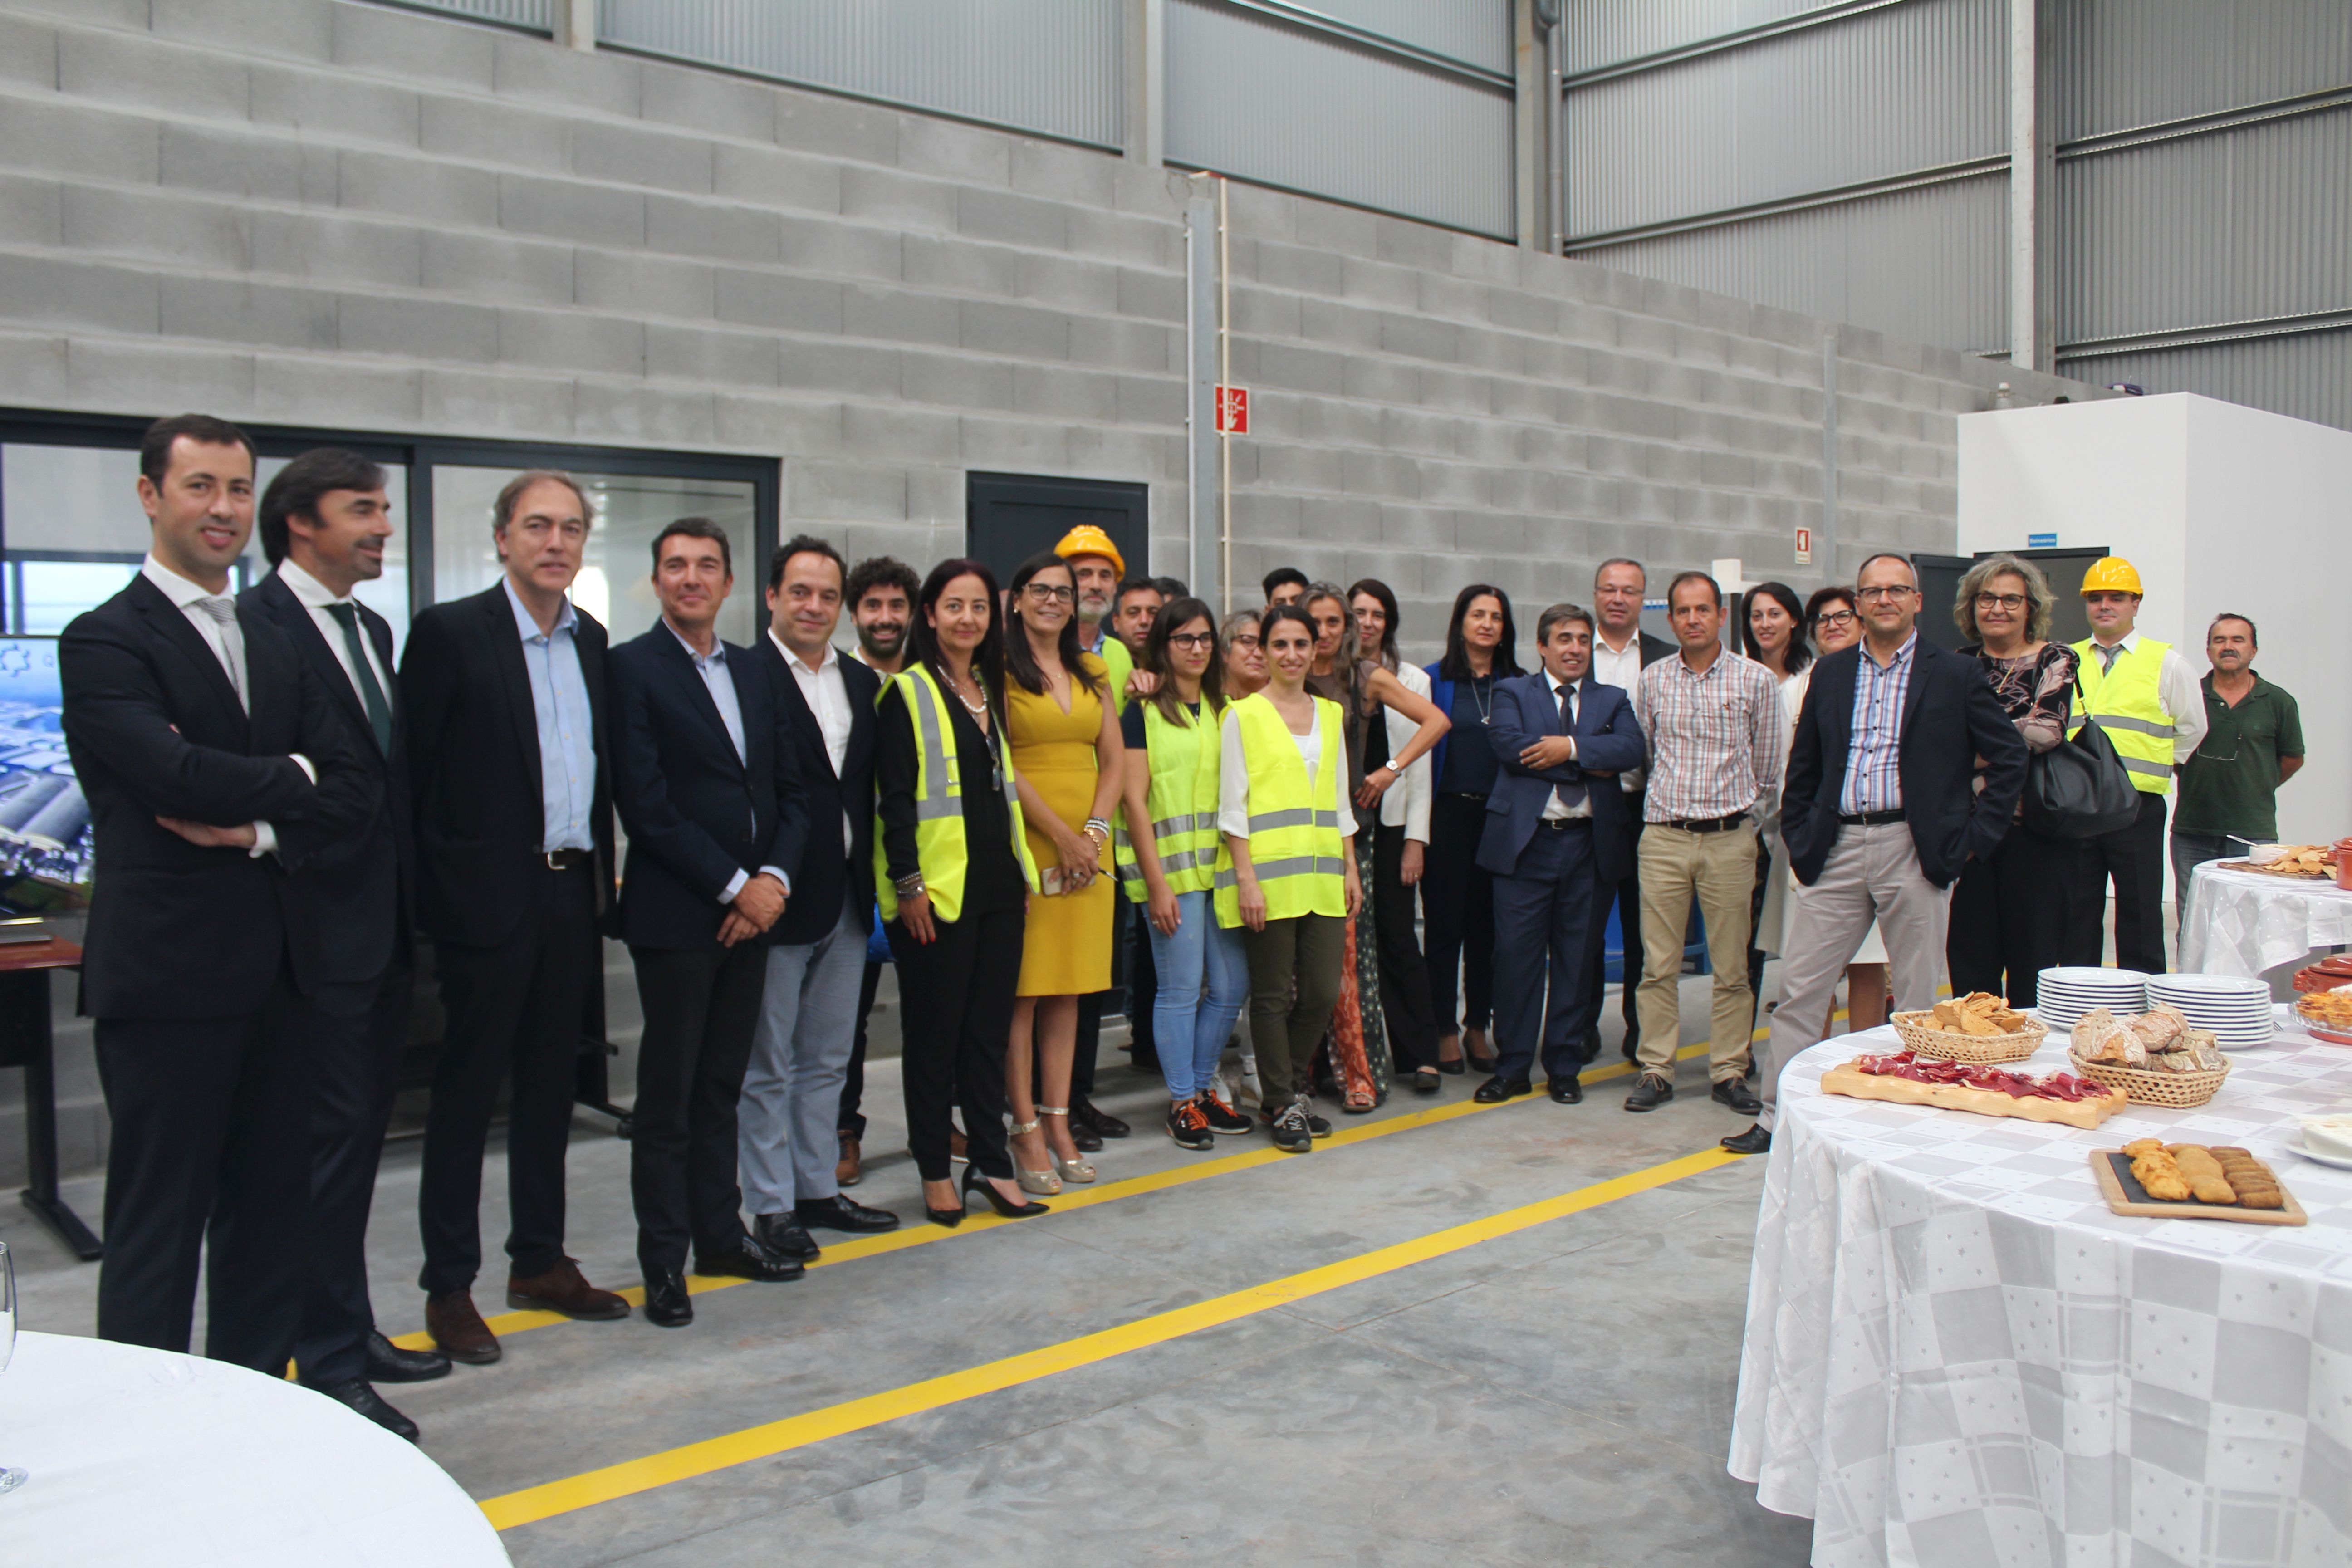 inauguração de instalações de produção de silicato de sódio e potássio em Portugal